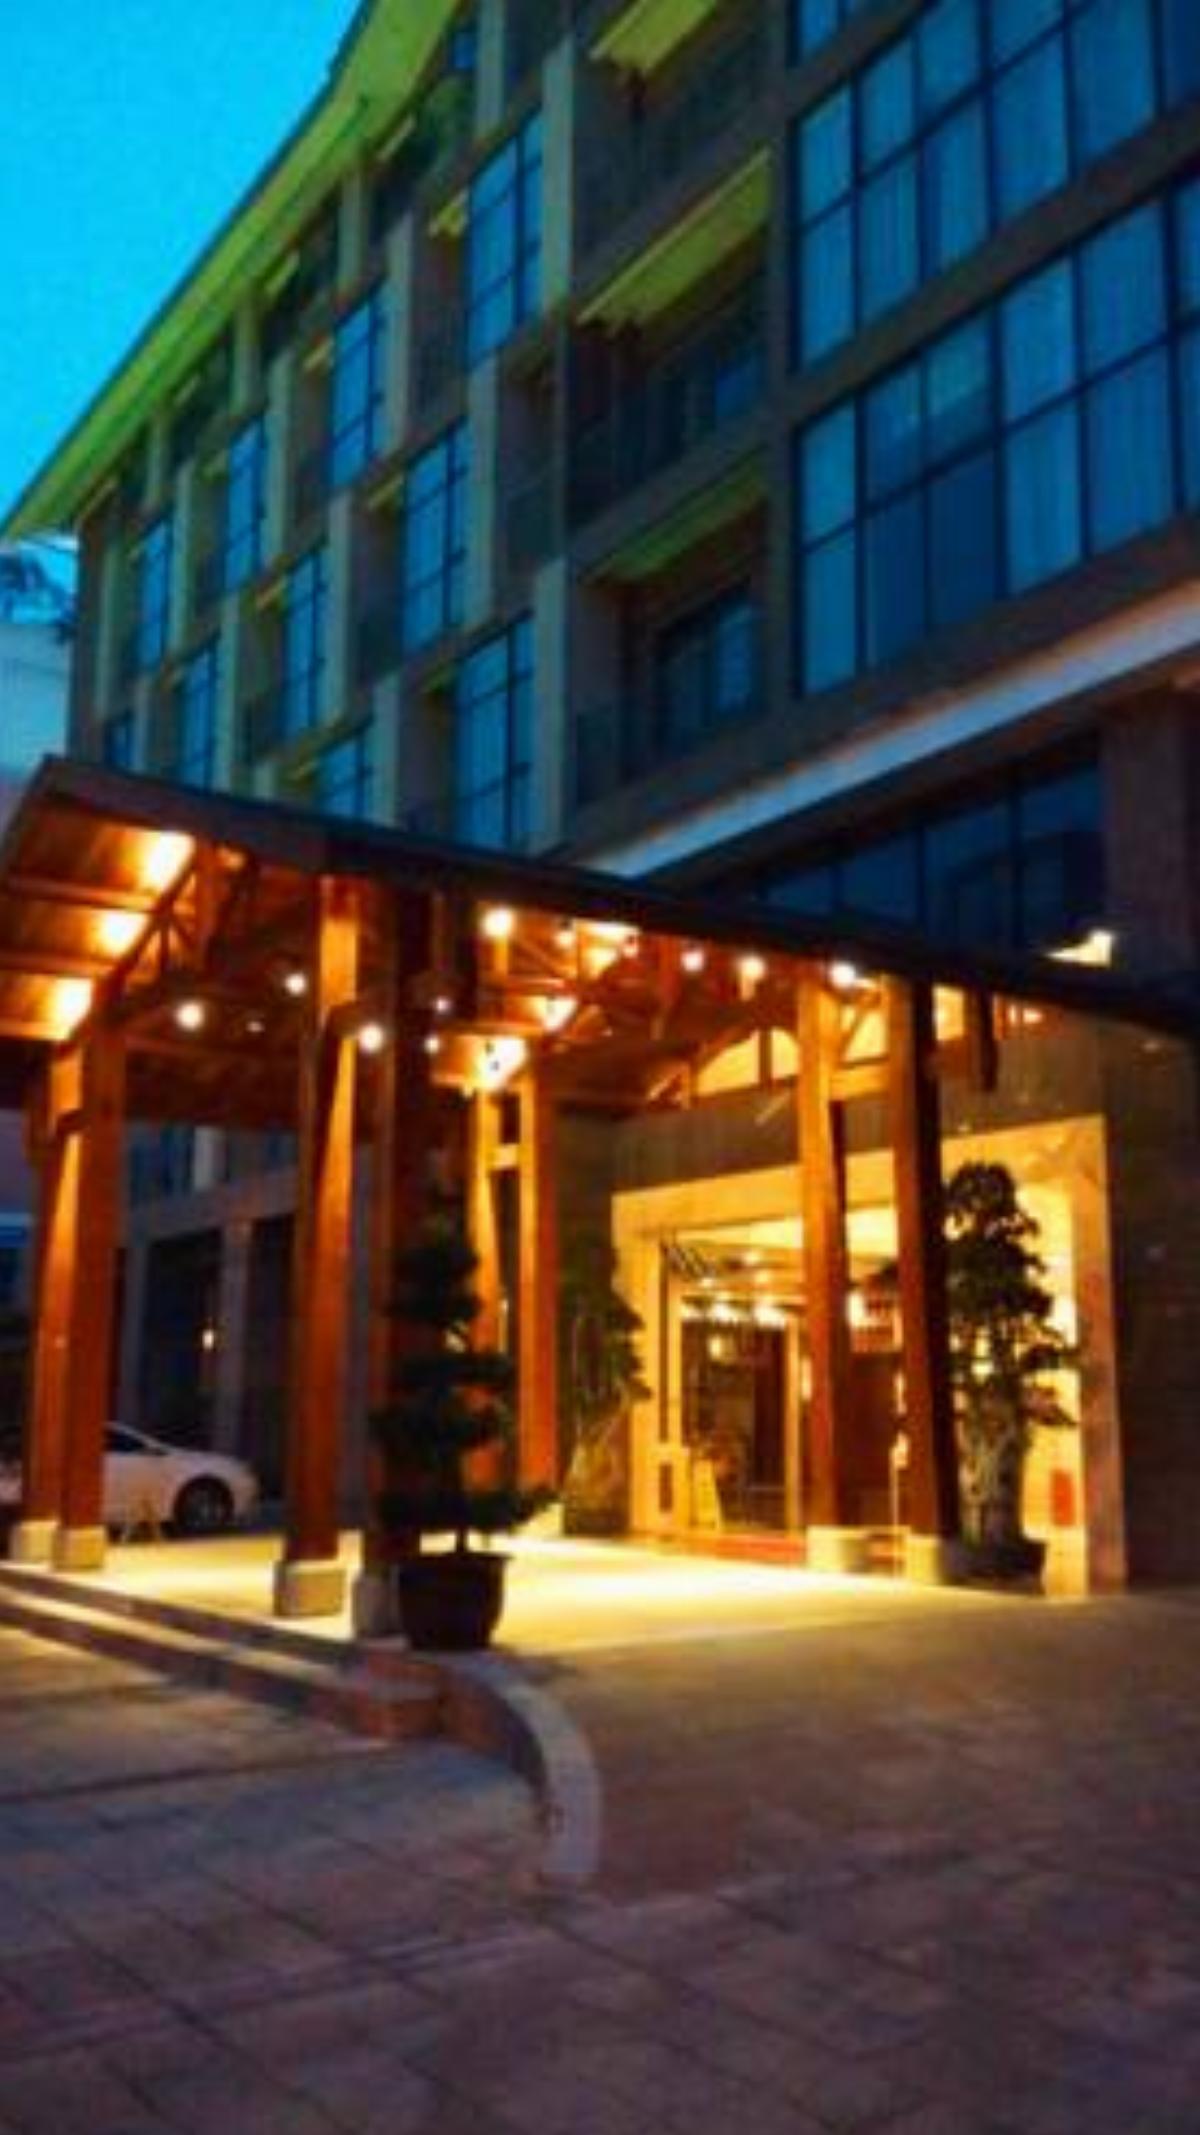 Dujiangyan Shuyin Zhihui hotel Hotel Dujiangyan China